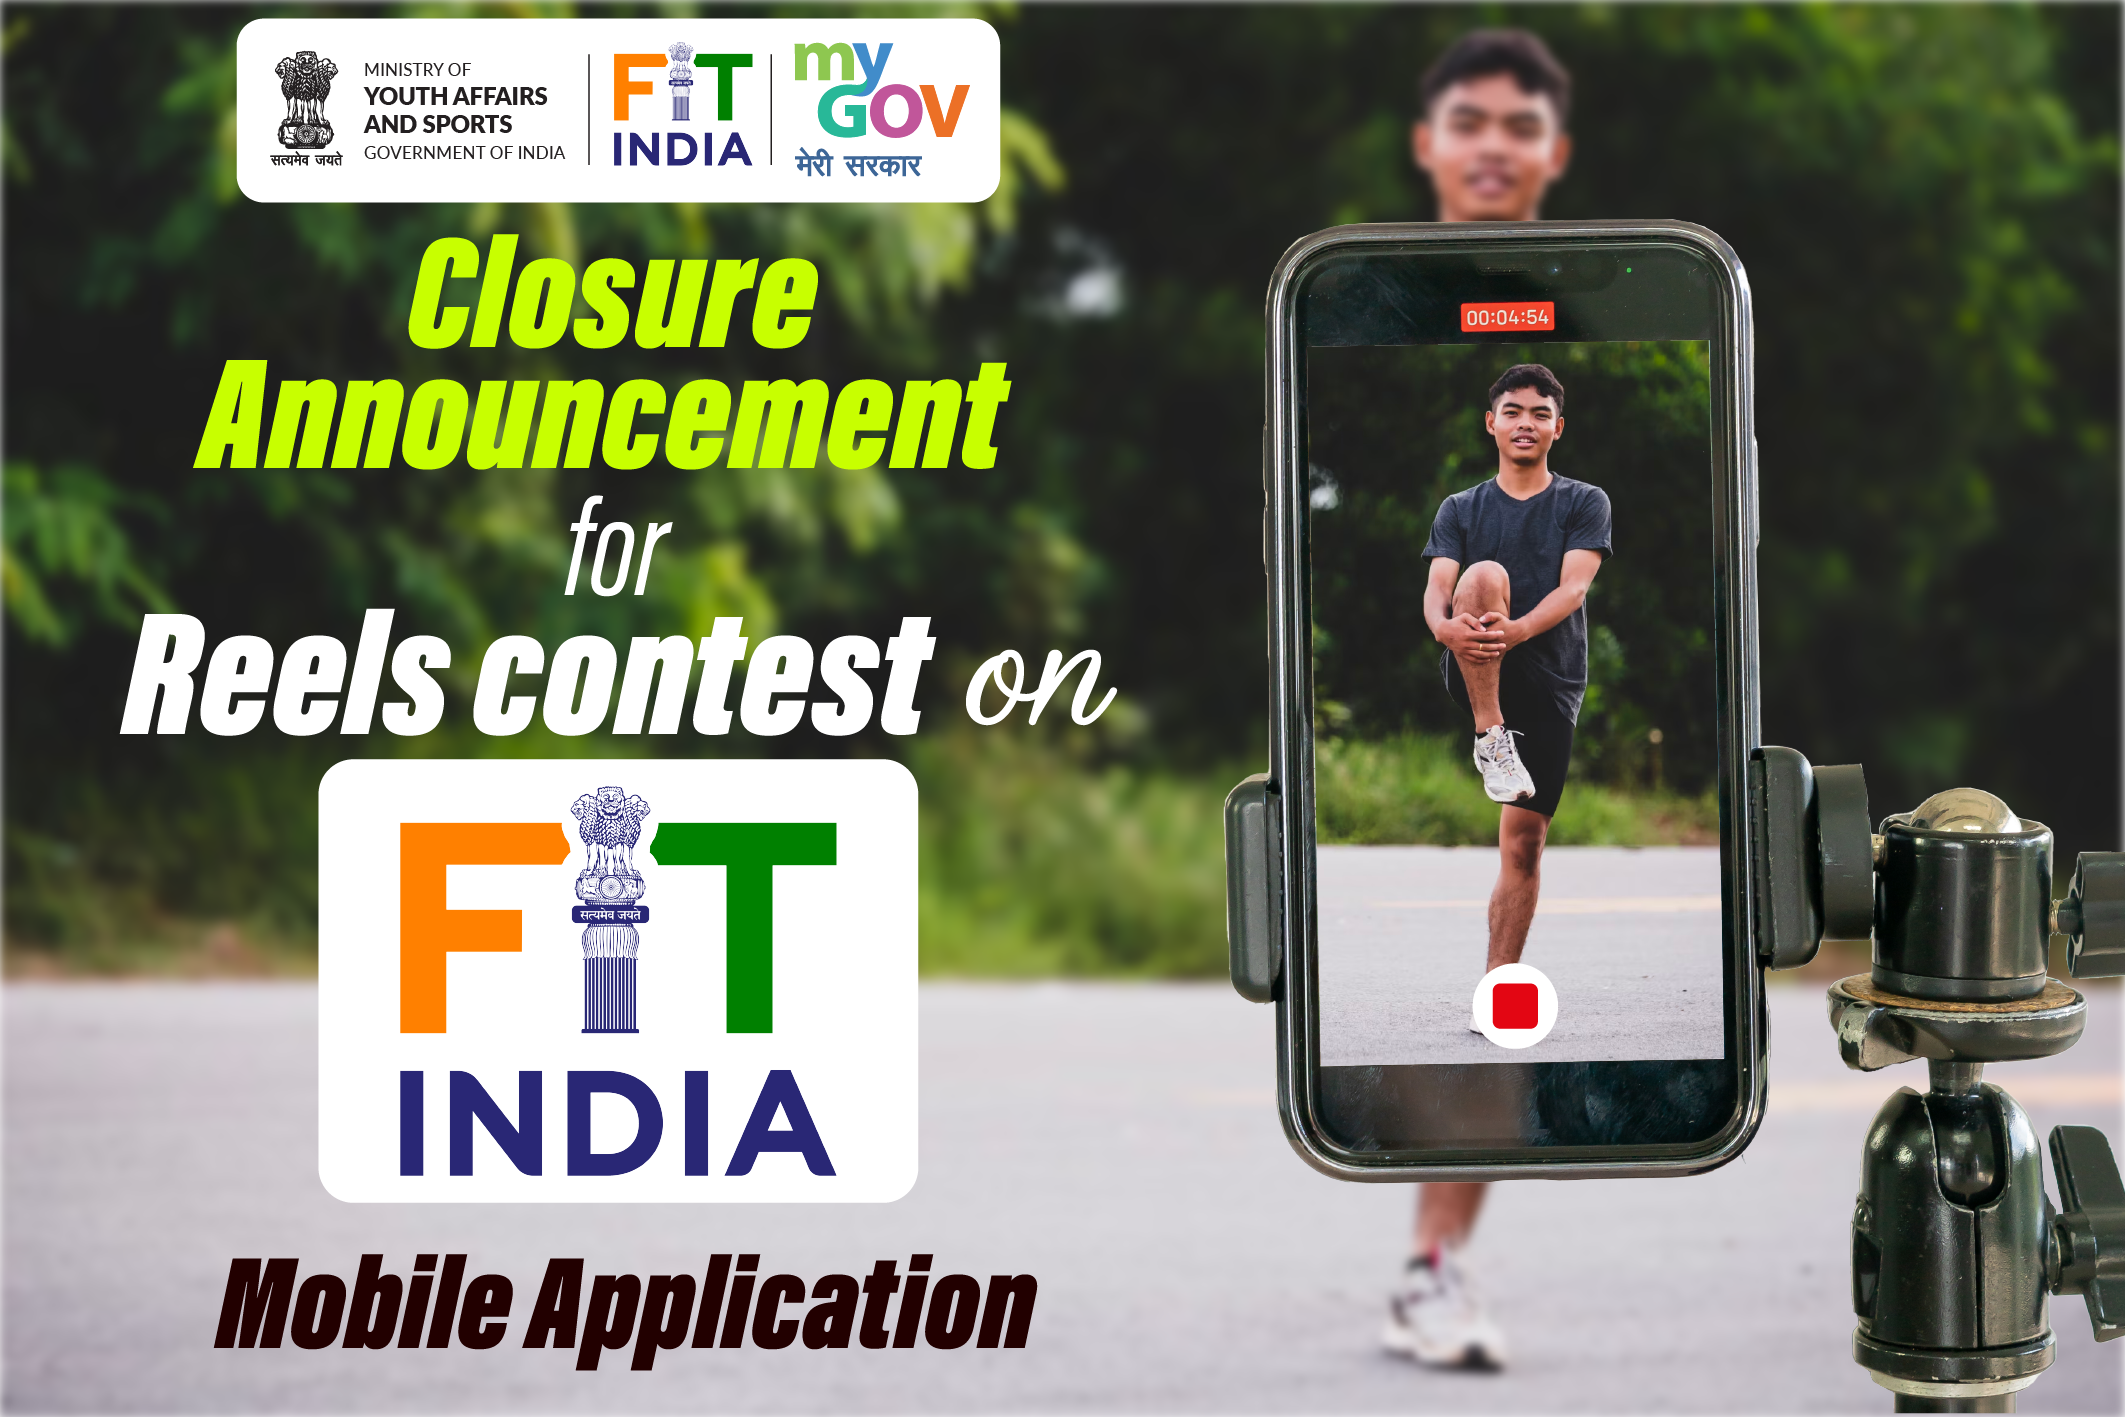 फिट इंडिया मोबाइल एप्लिकेशन पर रील बनाएं प्रतियोगिता के समापन की घोषणा